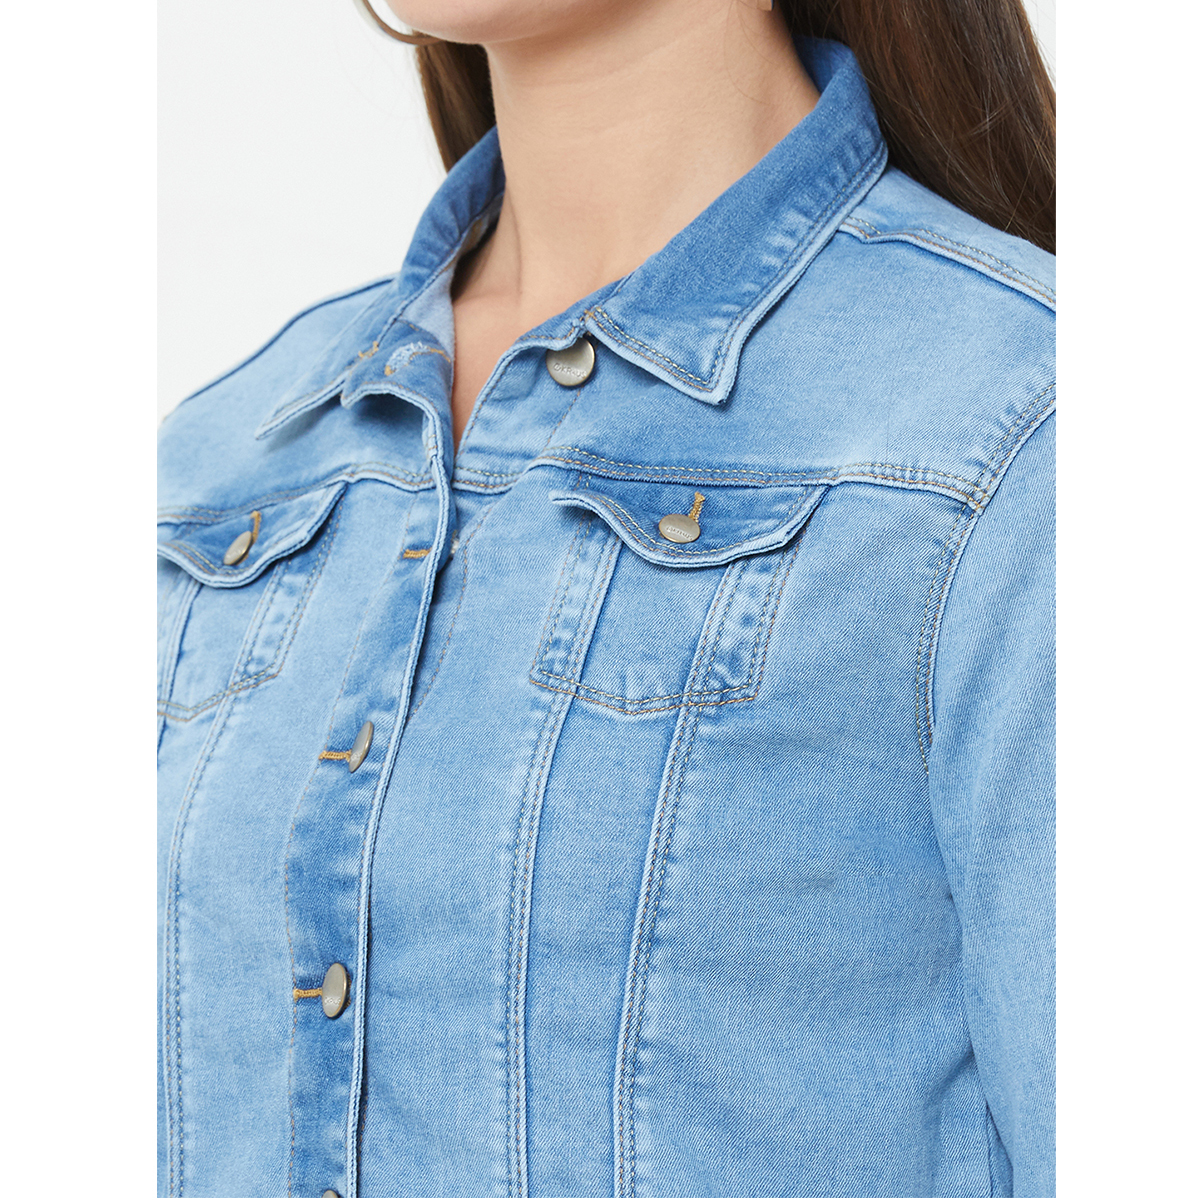 Kraus Jeans Denim Jacket For Women Medim Blue